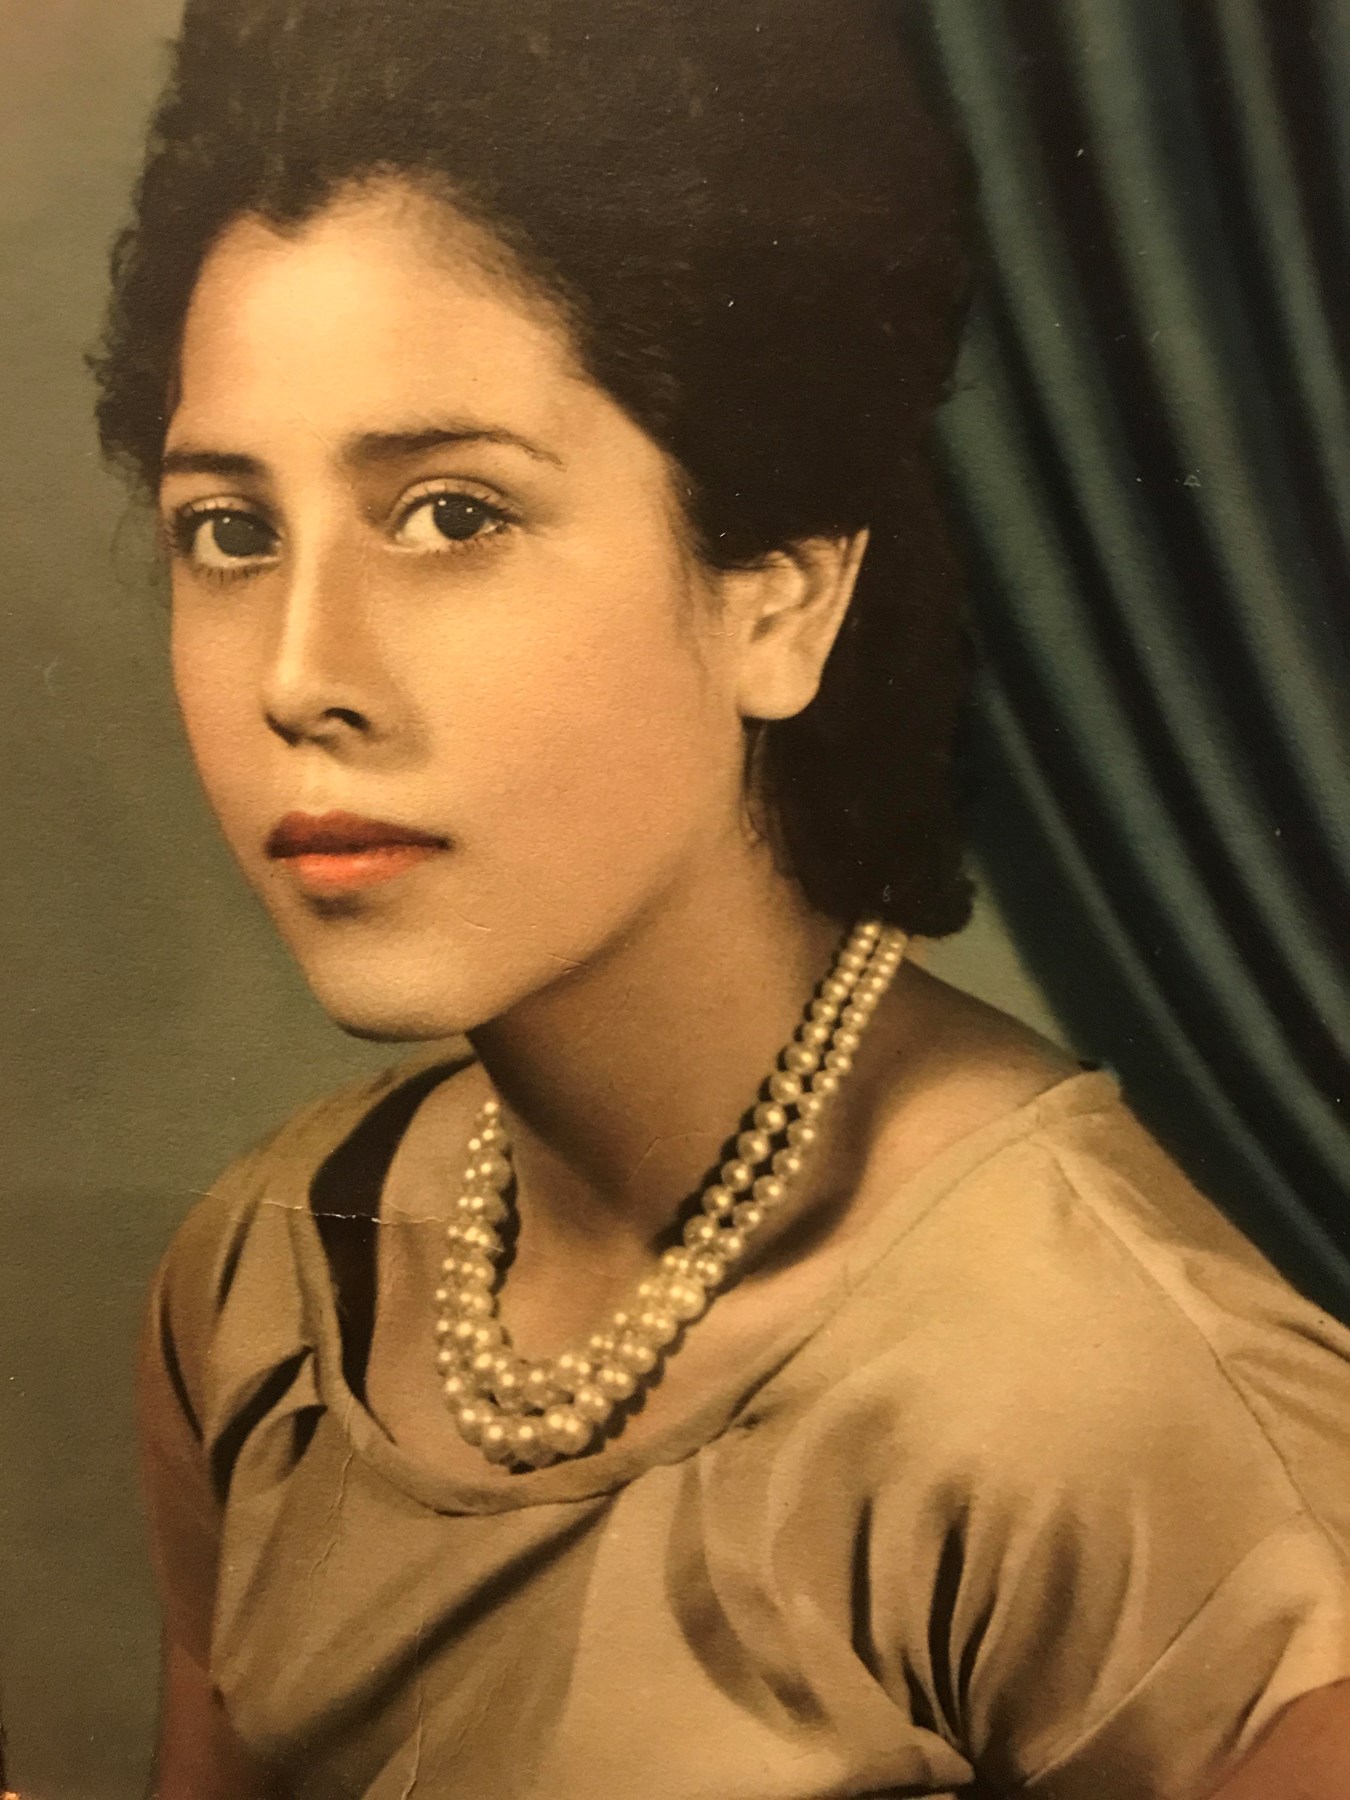 Obituary of Maria Del Refugio Fonseca - 11/22/2018 - From the Family